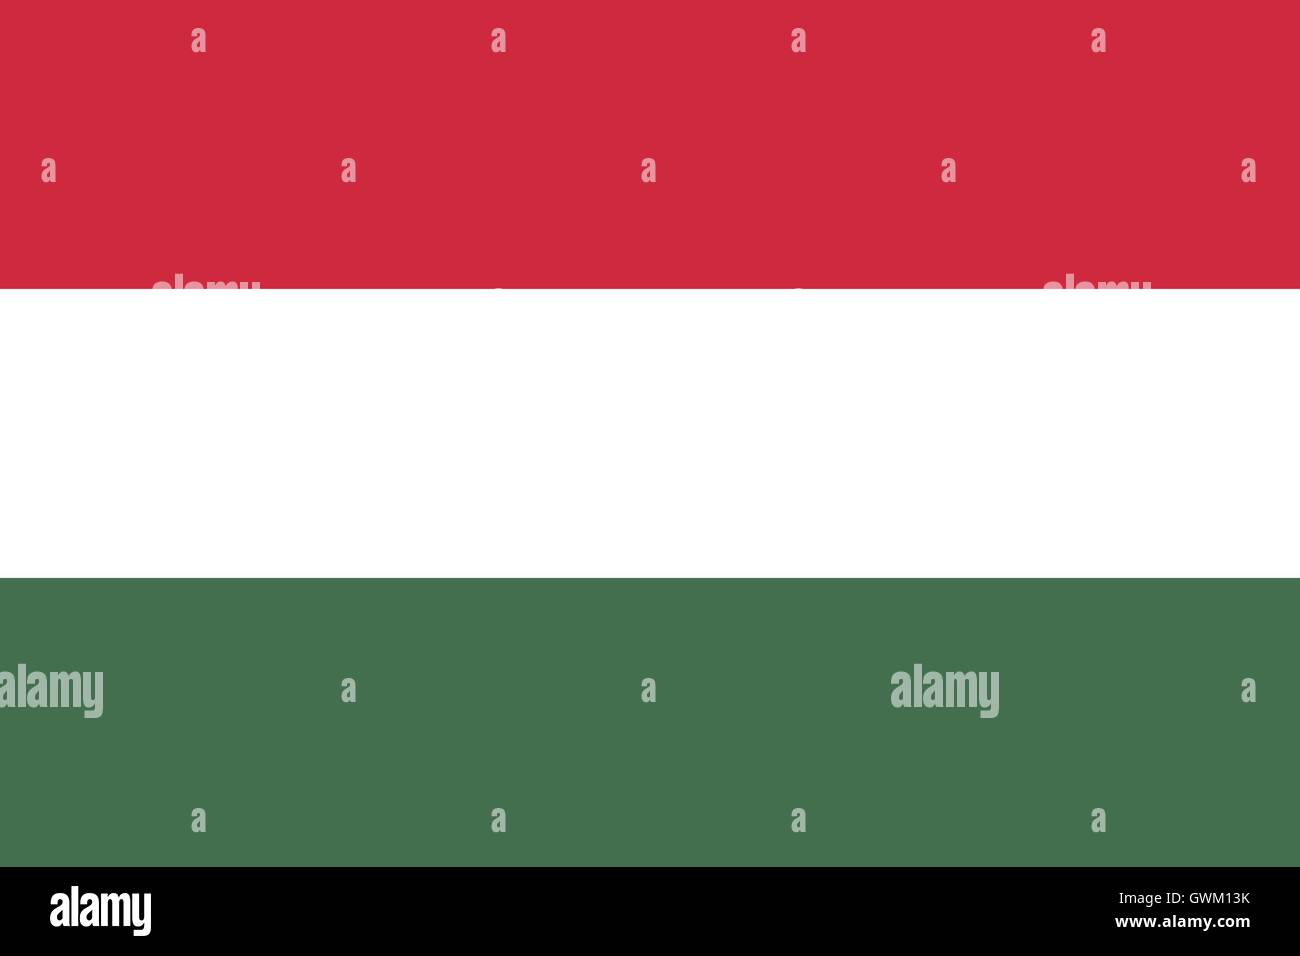 Ungheria bandiera, colori ufficiali, proporzione corretta, accurata illustrazione vettoriale. Illustrazione Vettoriale